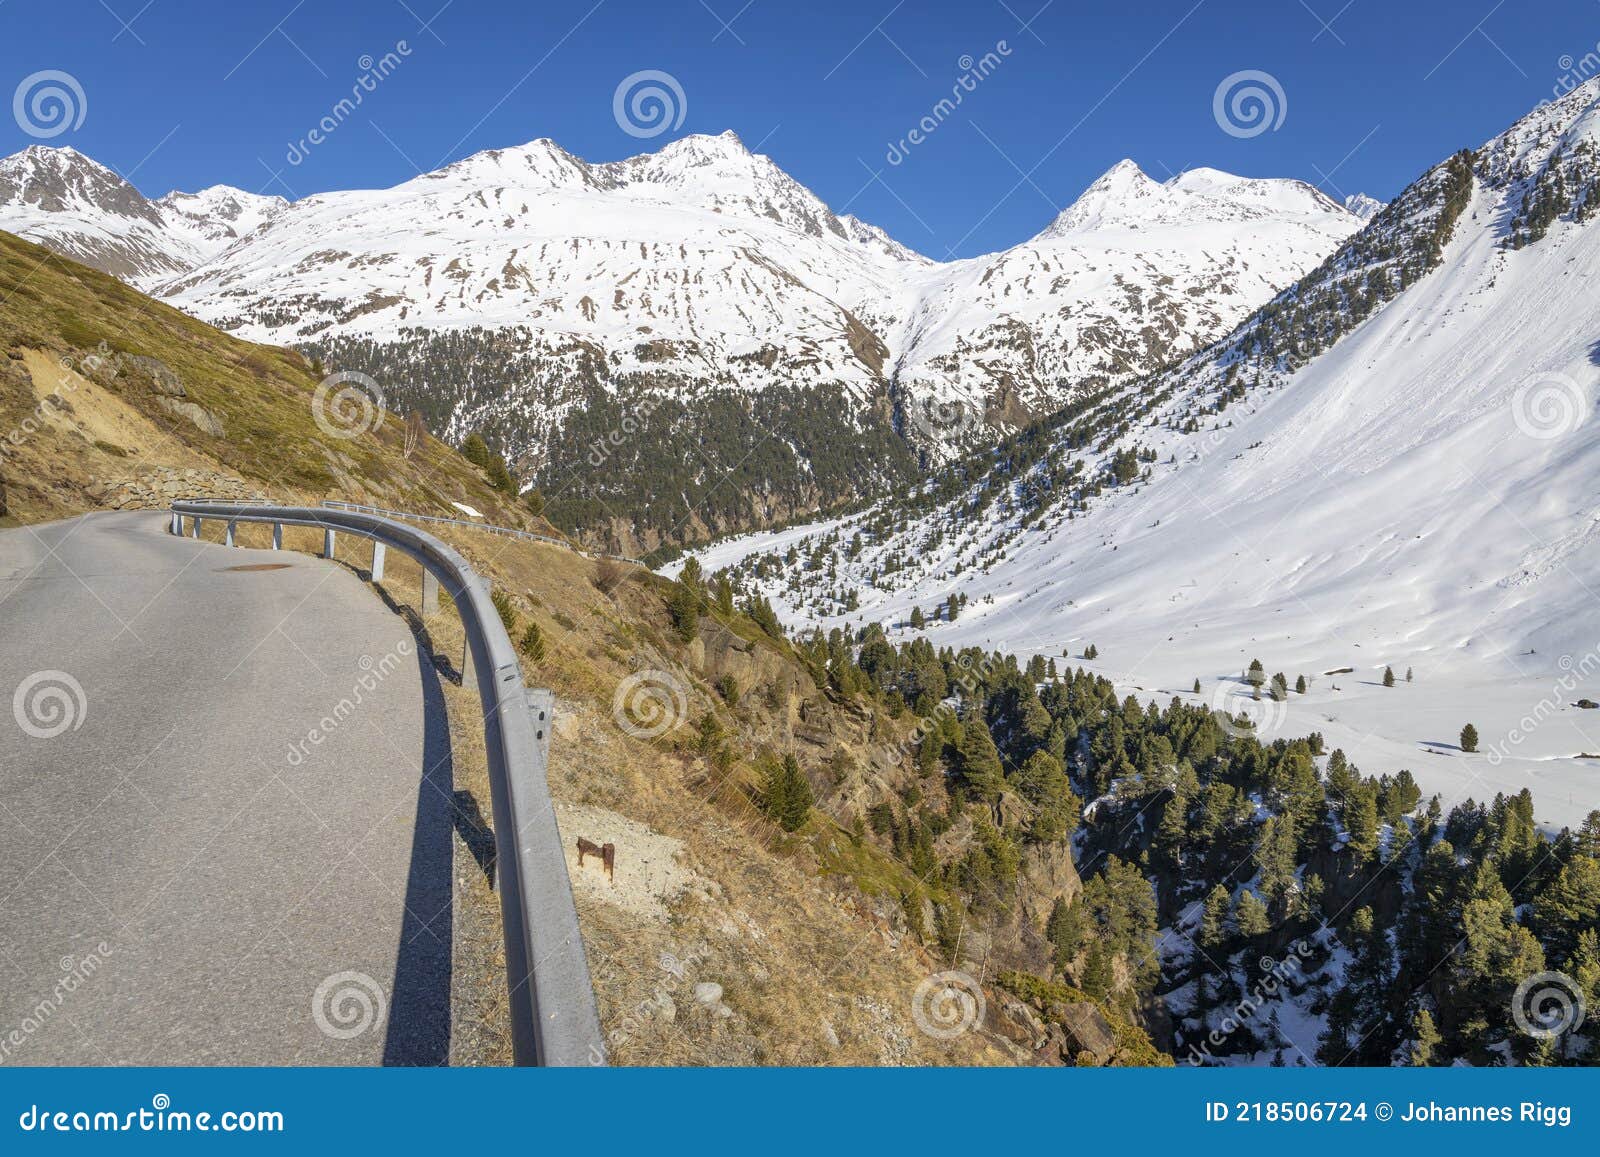 wonderful winter landscape in the venter valley in tirol, austria